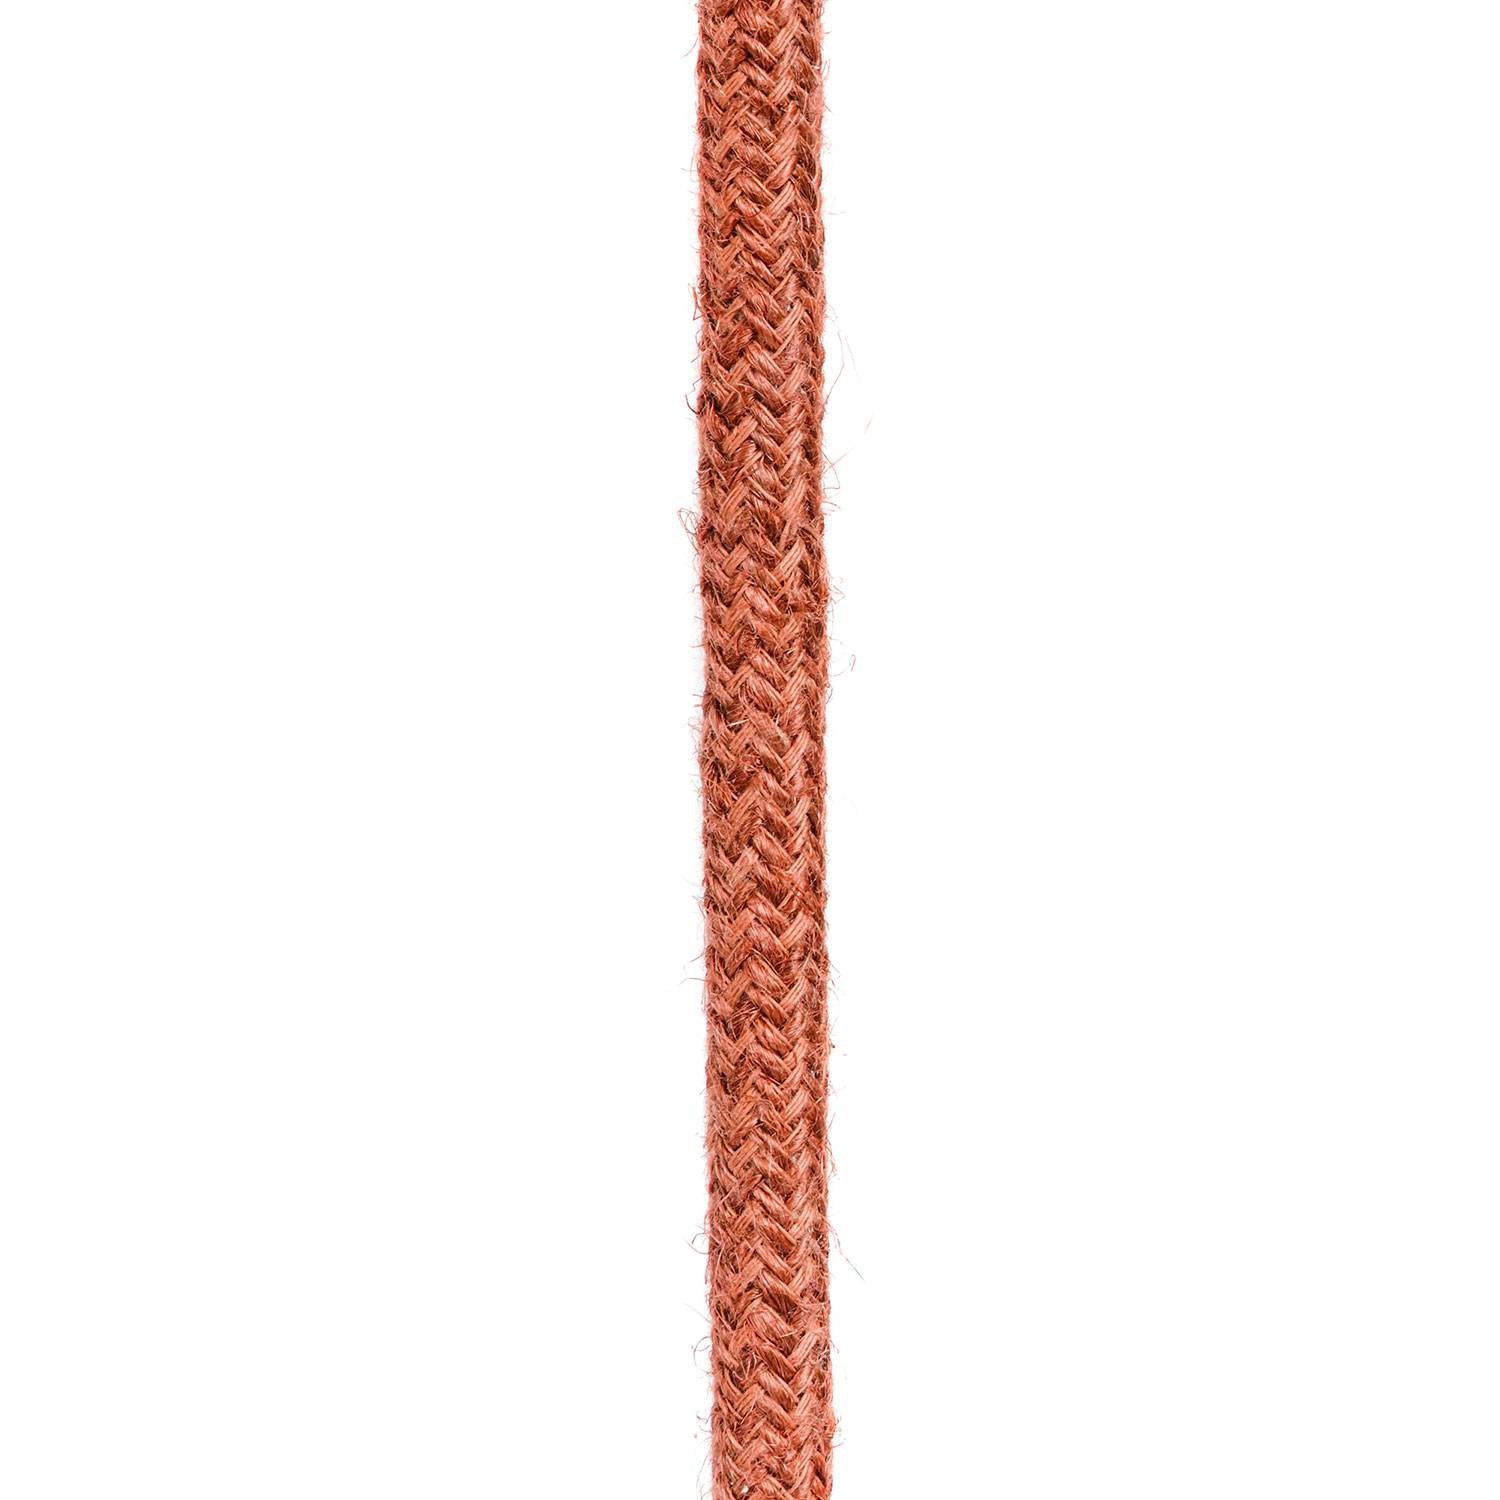 Okrugli električni kabel obložen jutom u boji gline RN27